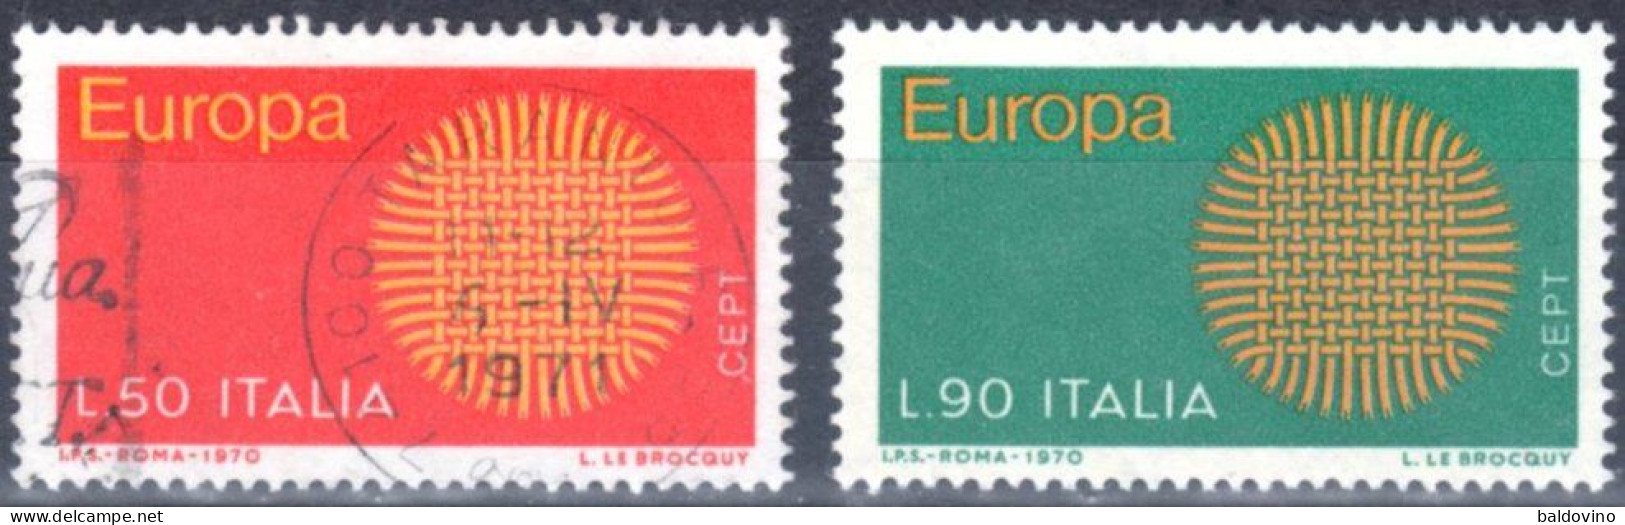 Italia 1970 Lotto 26 Valori (vedi Descrizione) - 1961-70: Gebraucht